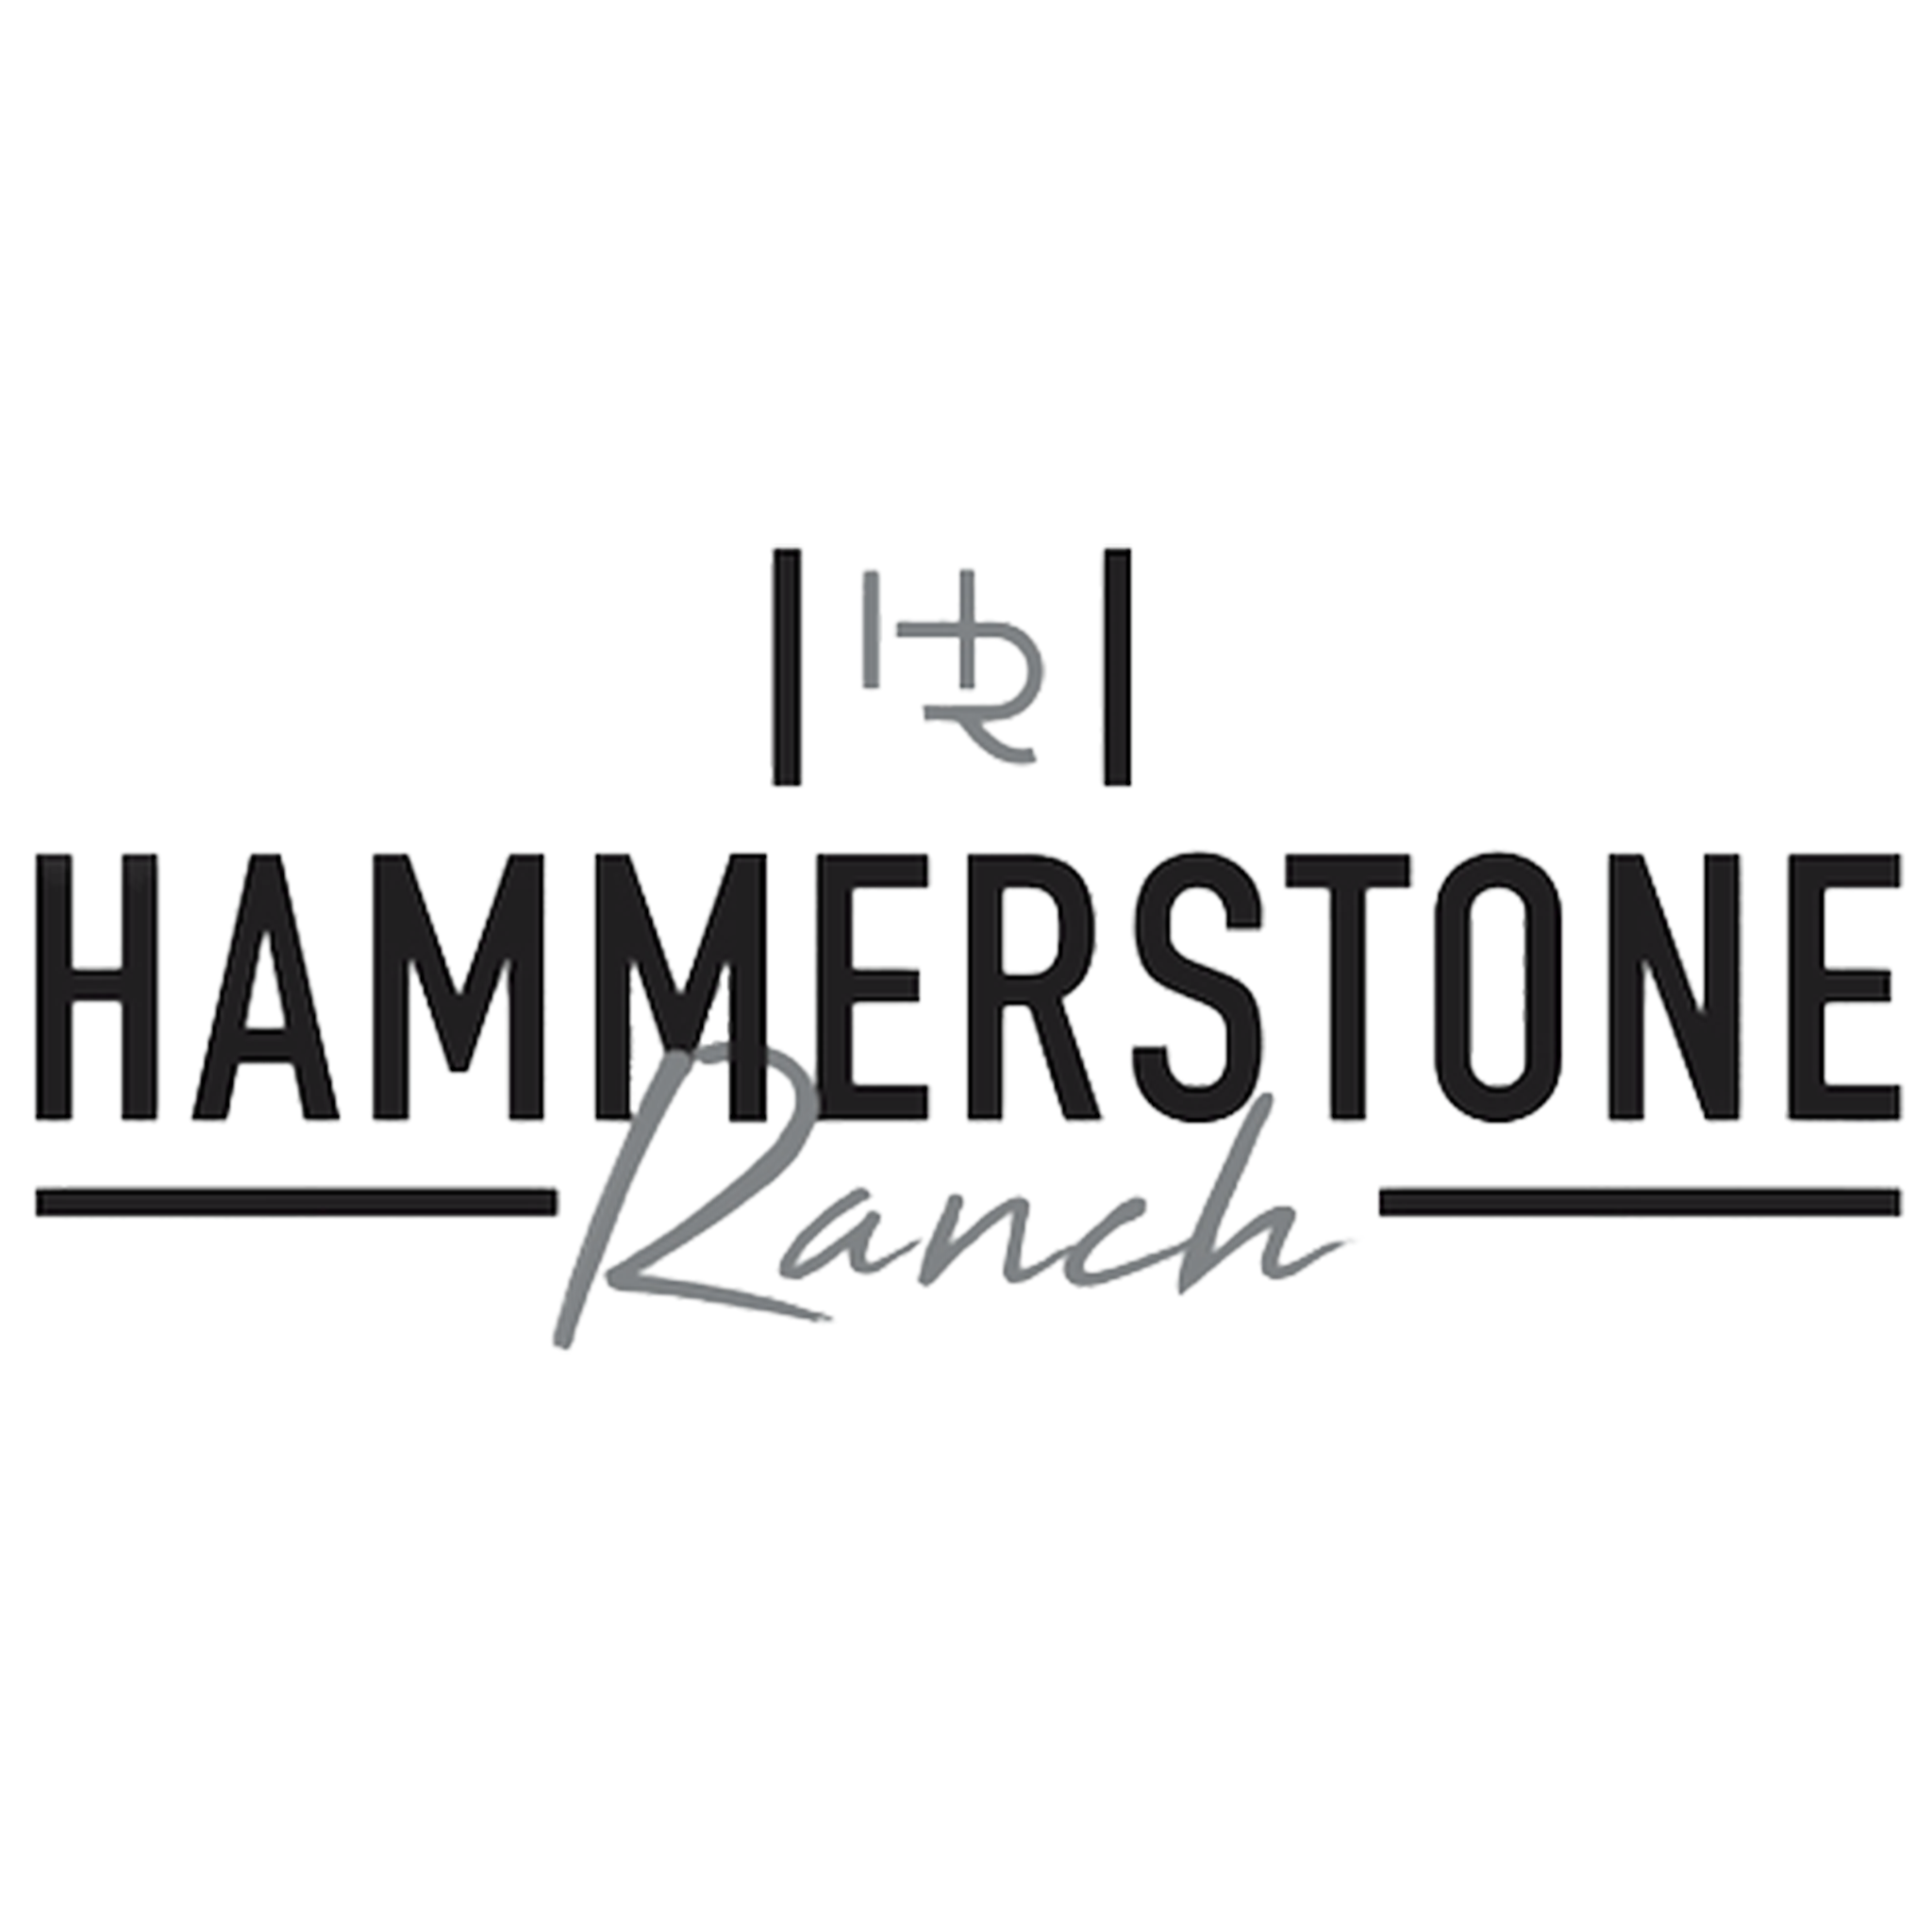 Hammerstone Ranch